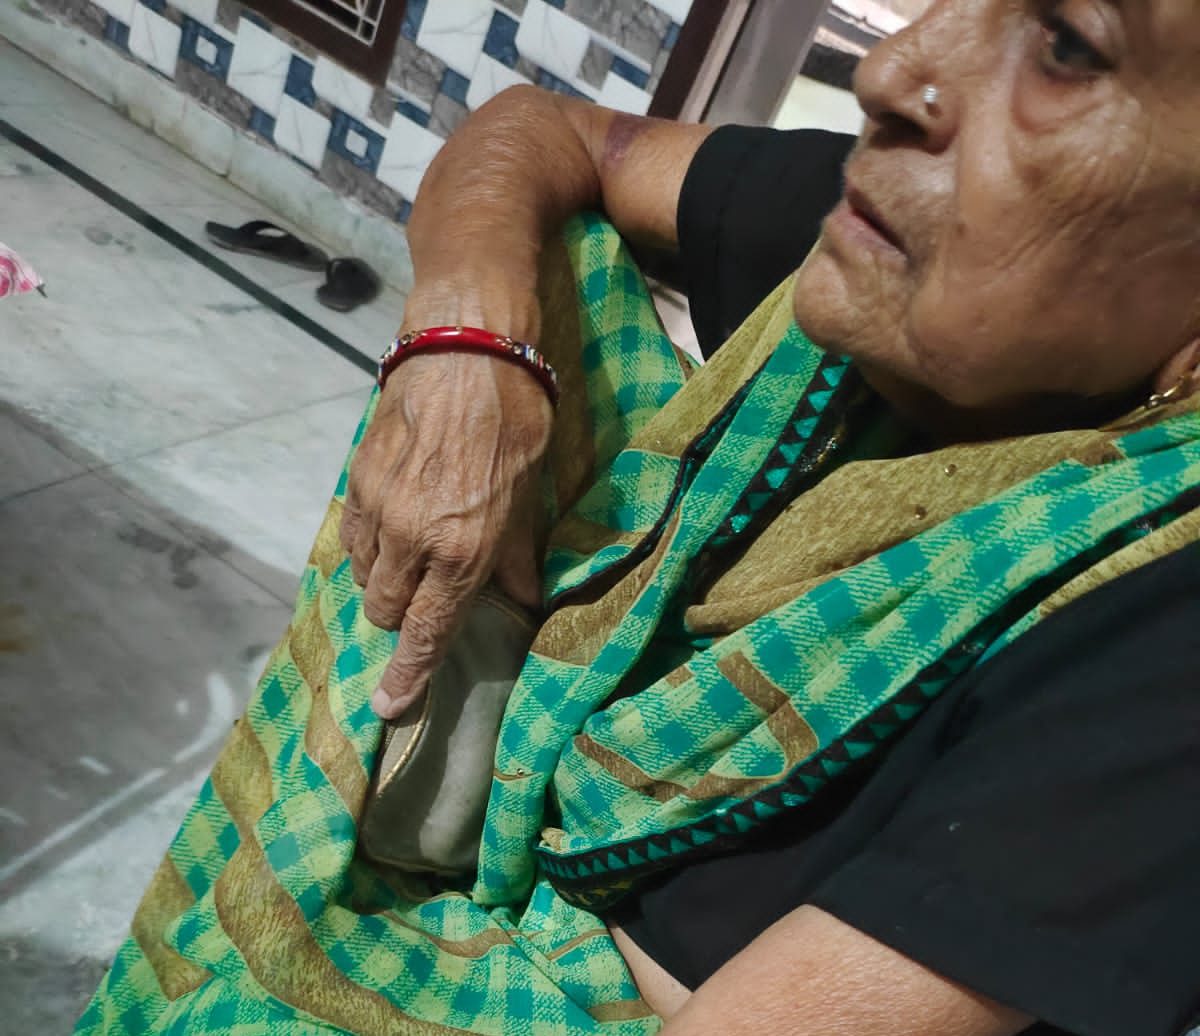 Greater Noida News : कलियुगी बेटे की शर्मनाक करतूत, संपत्ति के लिए मां को बुरी तरह पीटा